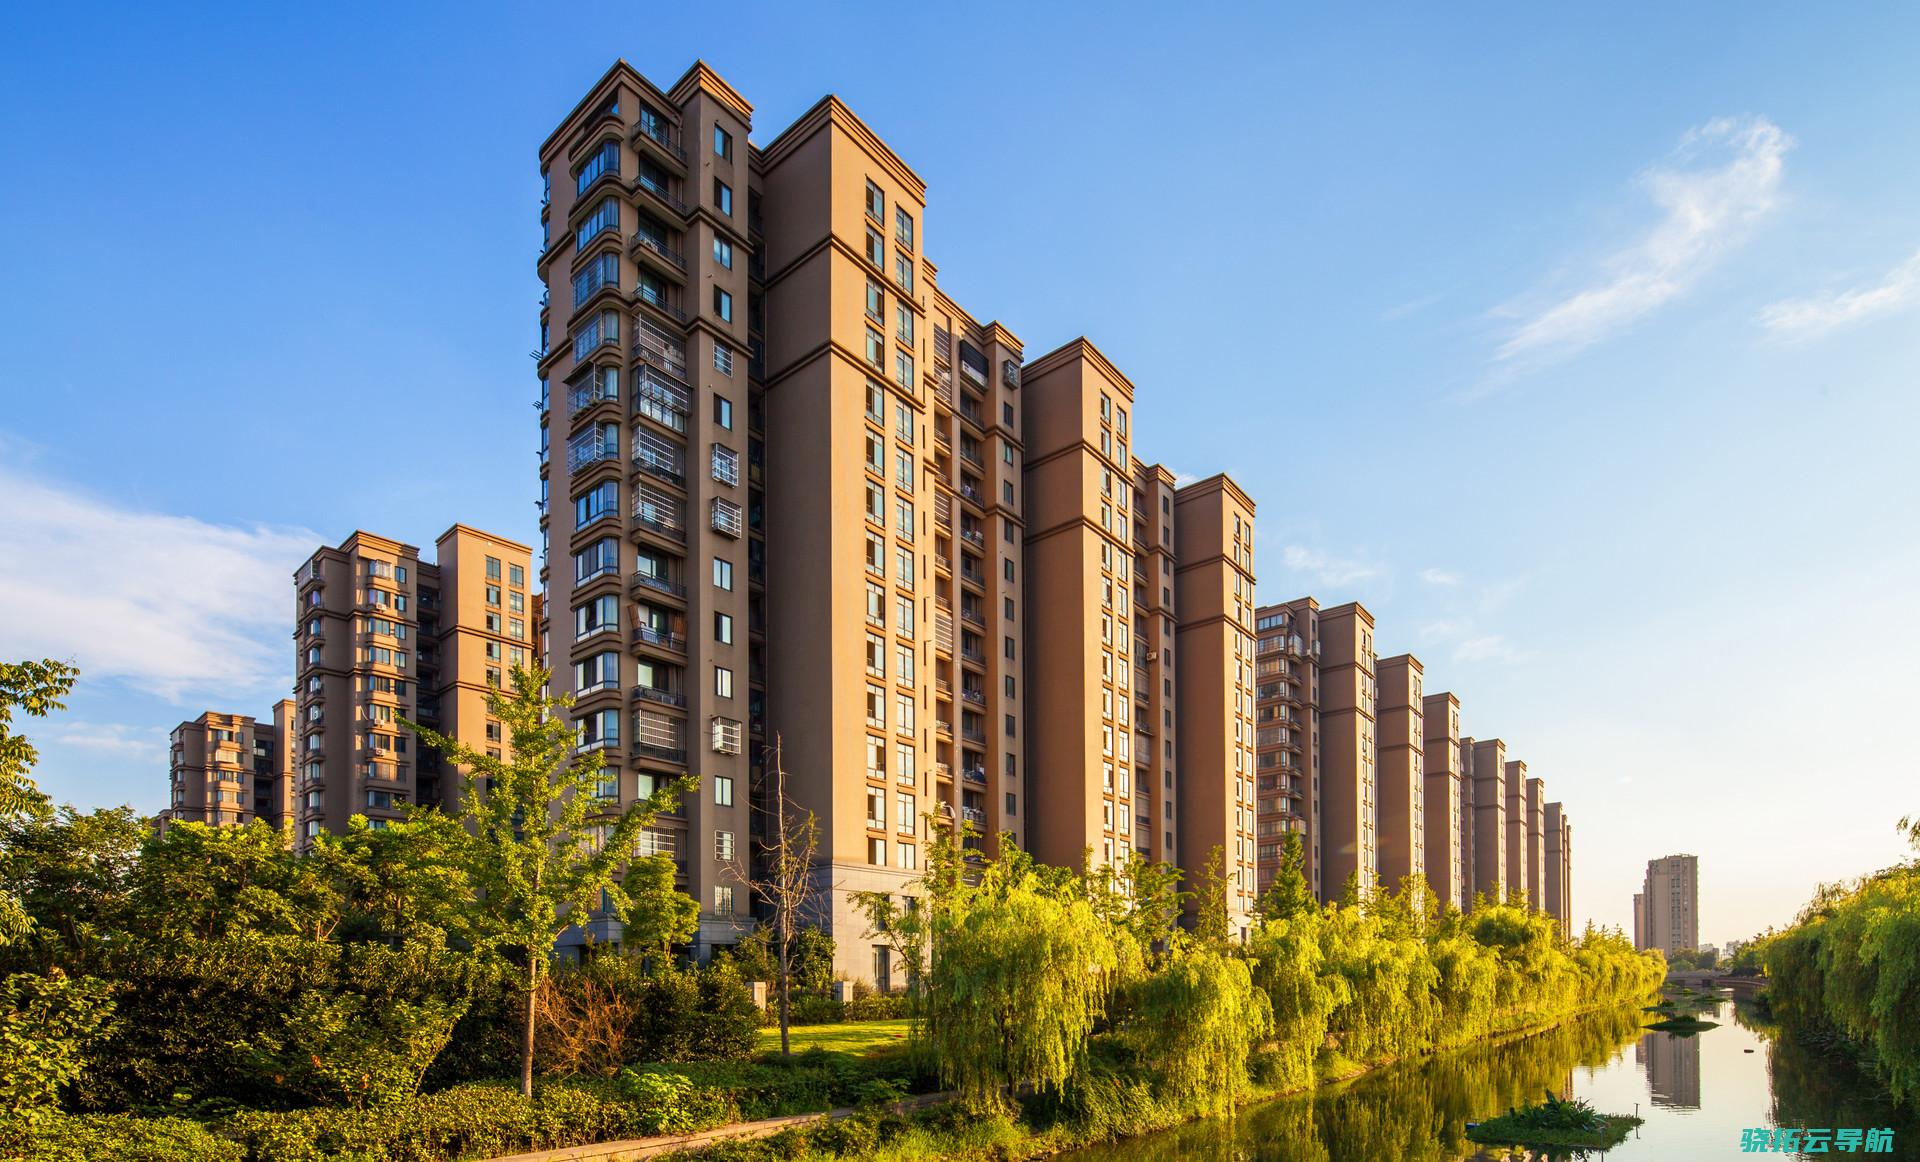 上海提升住房限购政策 更好满足居民正当住房需求​